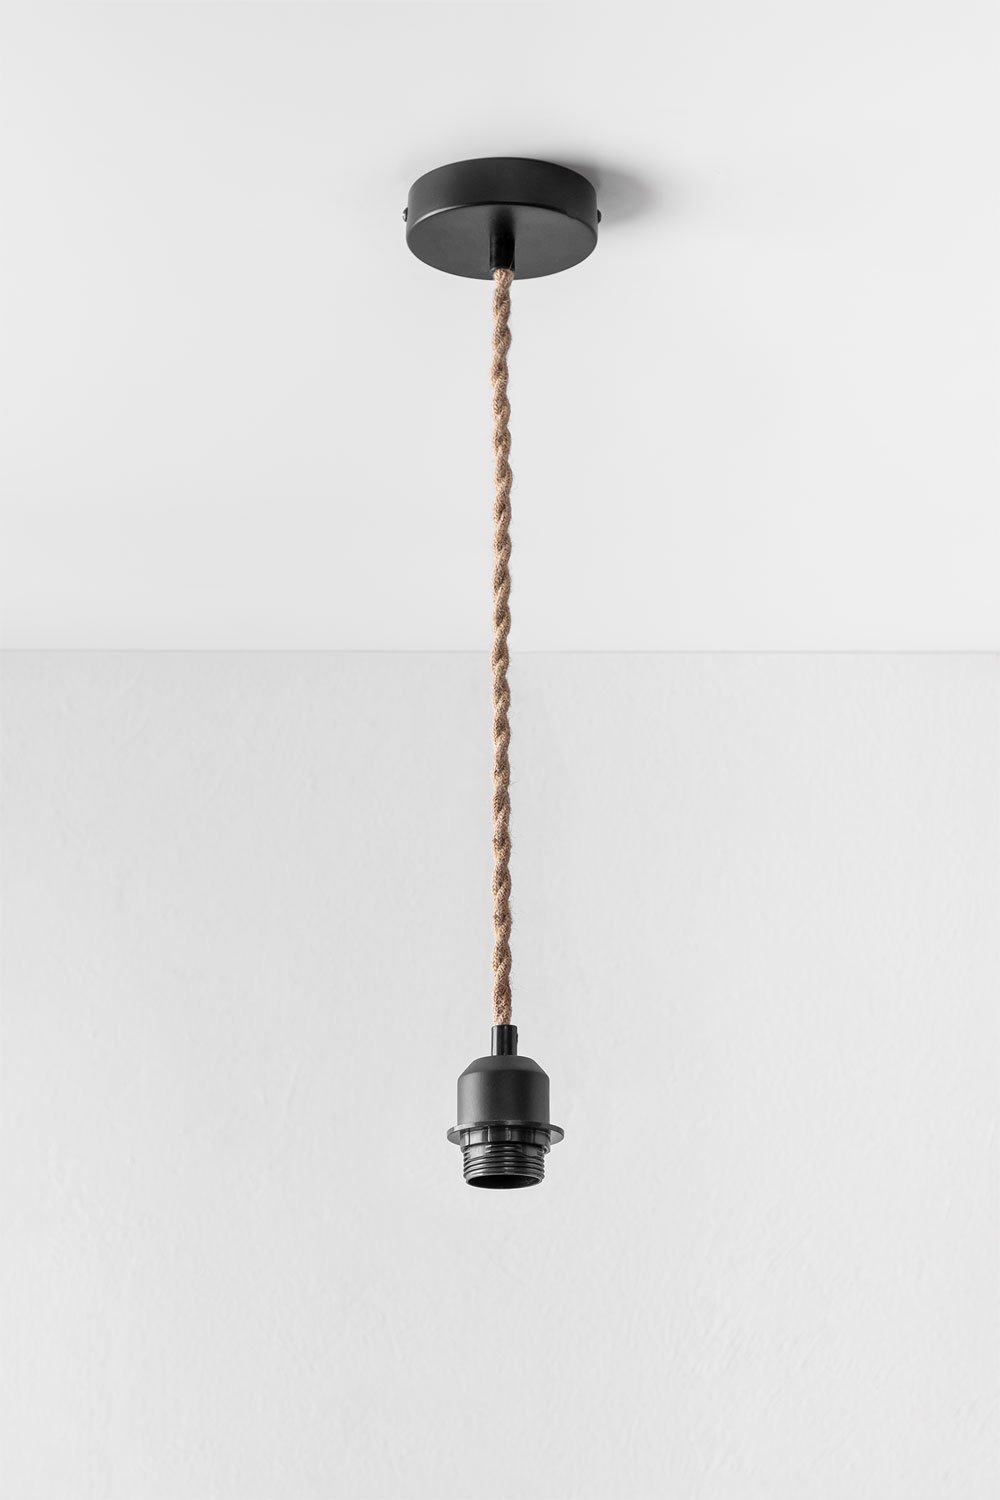 Kabel voor Plafondlamp Denise, galerij beeld 1